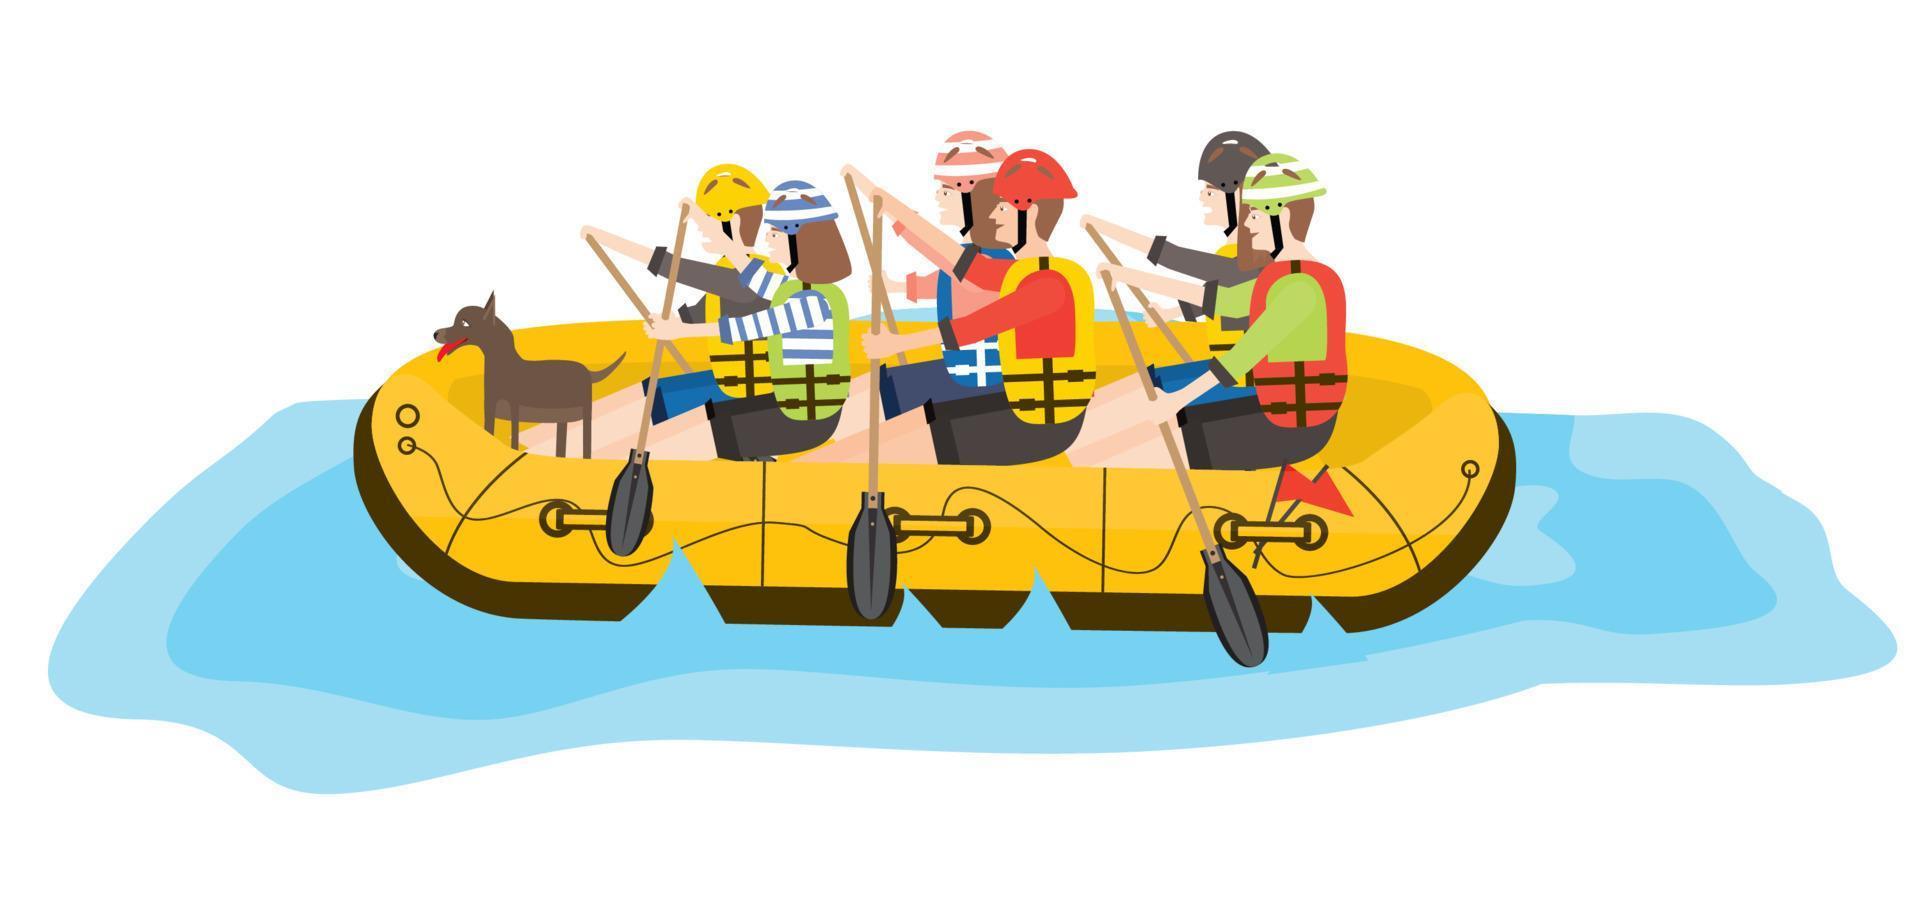 forsränning. sex människor och hund i gul båt. vektor